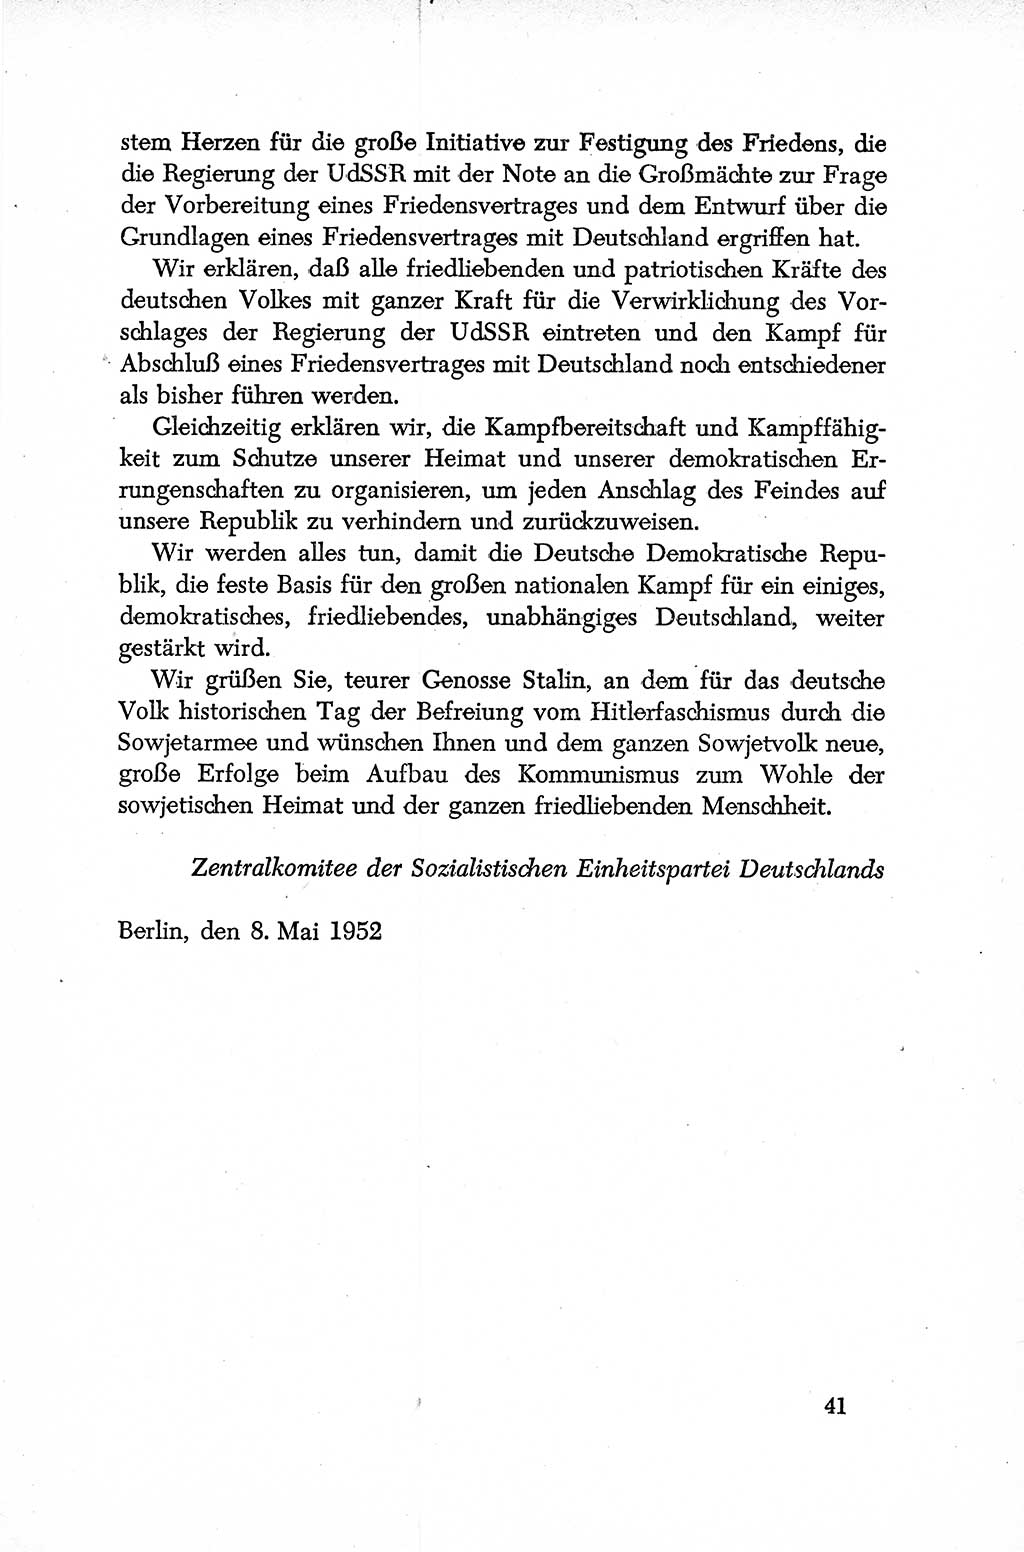 Dokumente der Sozialistischen Einheitspartei Deutschlands (SED) [Deutsche Demokratische Republik (DDR)] 1952-1953, Seite 41 (Dok. SED DDR 1952-1953, S. 41)